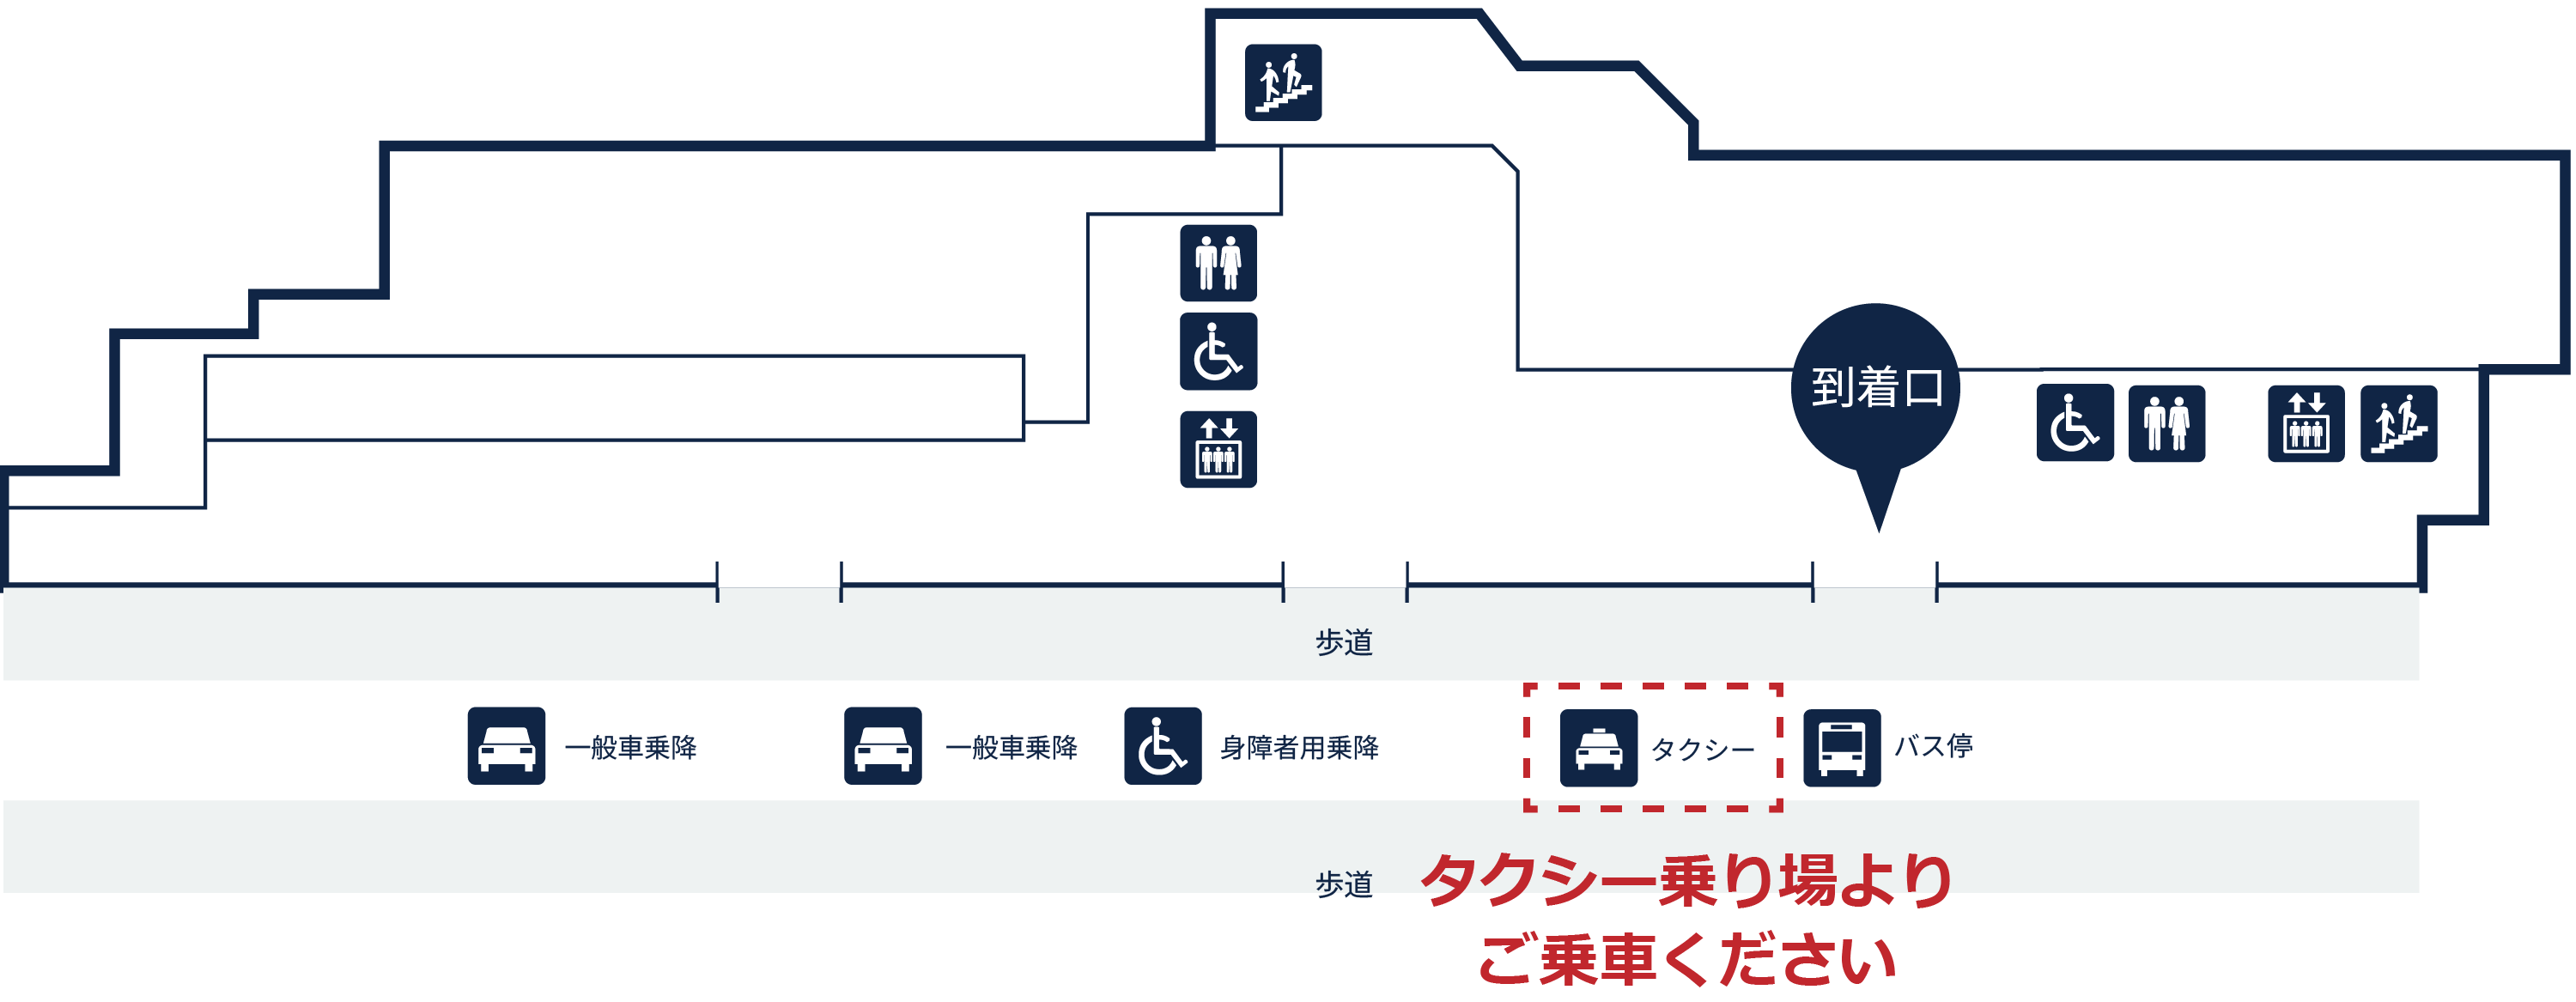 長崎空港1F、近距離タクシー乗り場よりご乗車ください